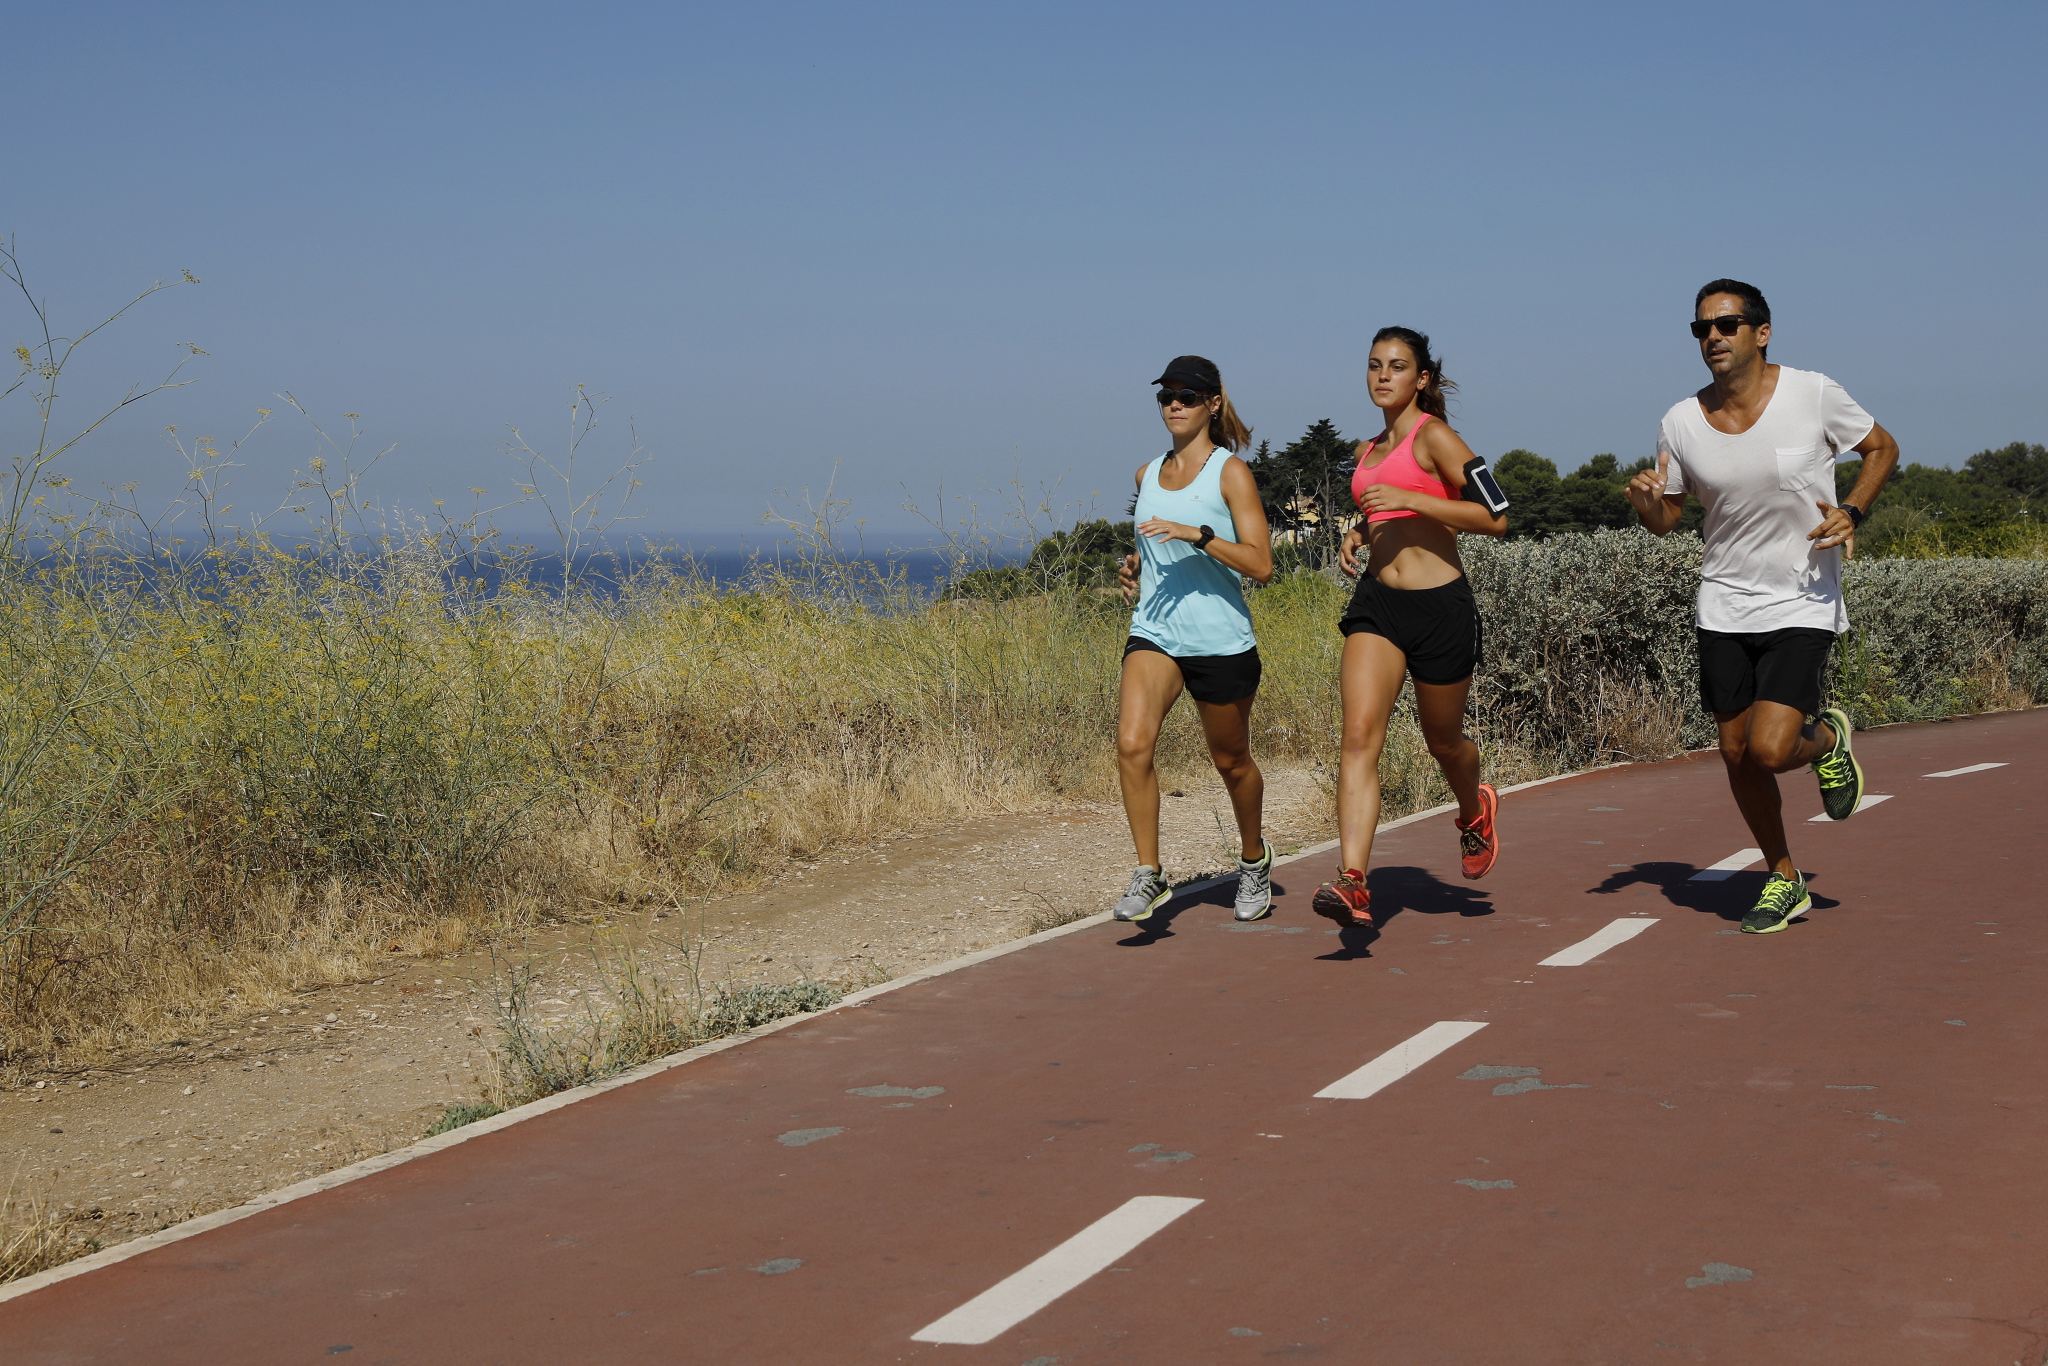 Correr aumenta o ganho de massa muscular?